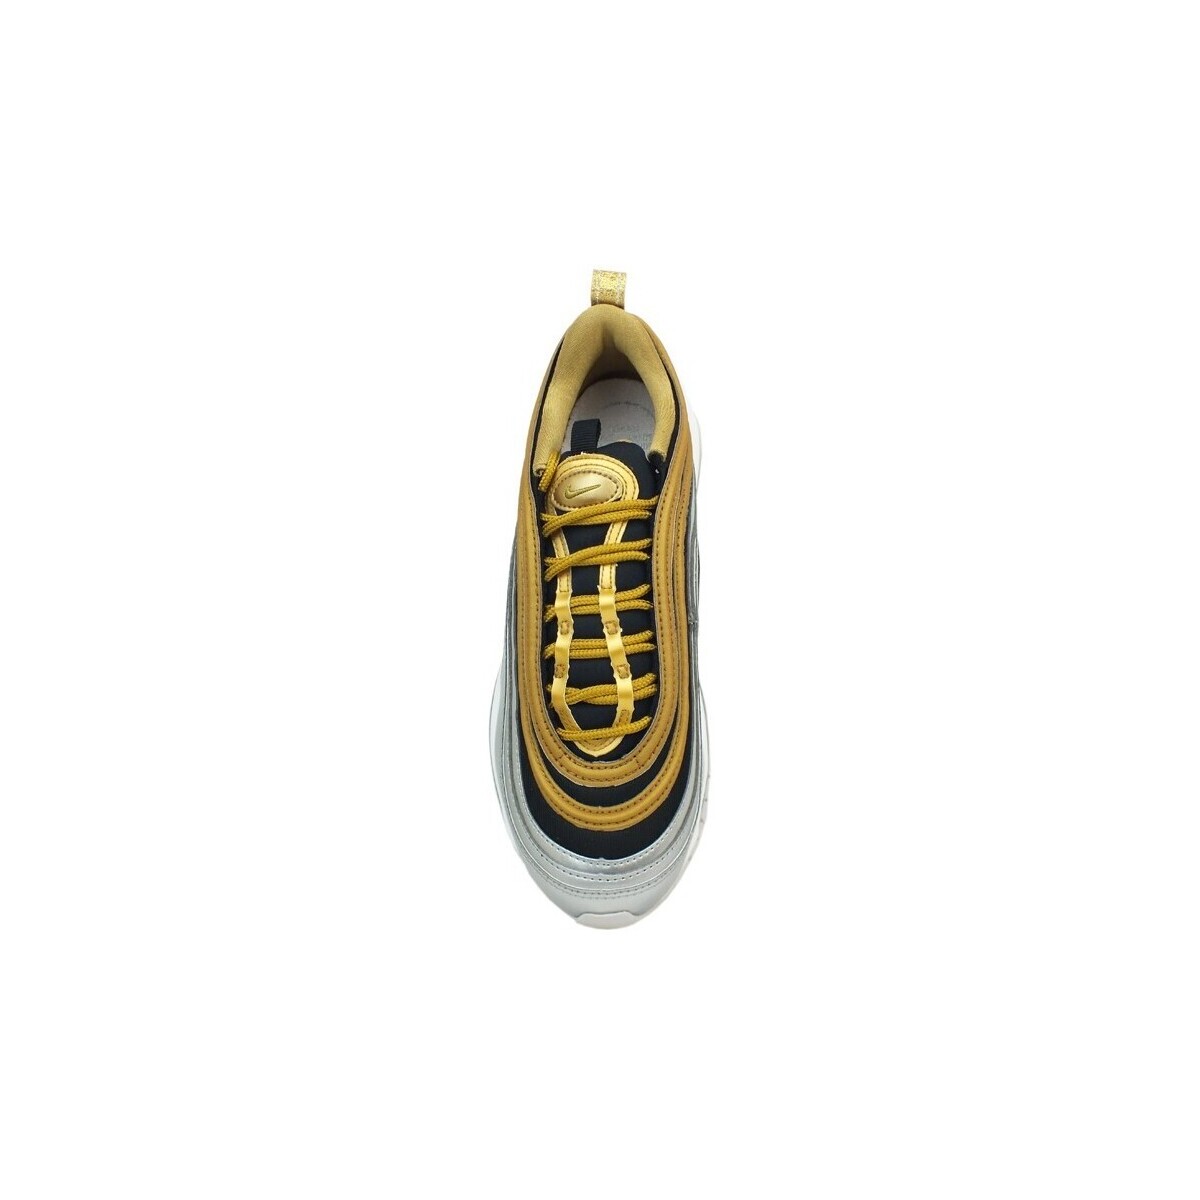 Nike Doré Air MAx 97 Special Edition Metallic Gold AQ4137700 UqCteY1P